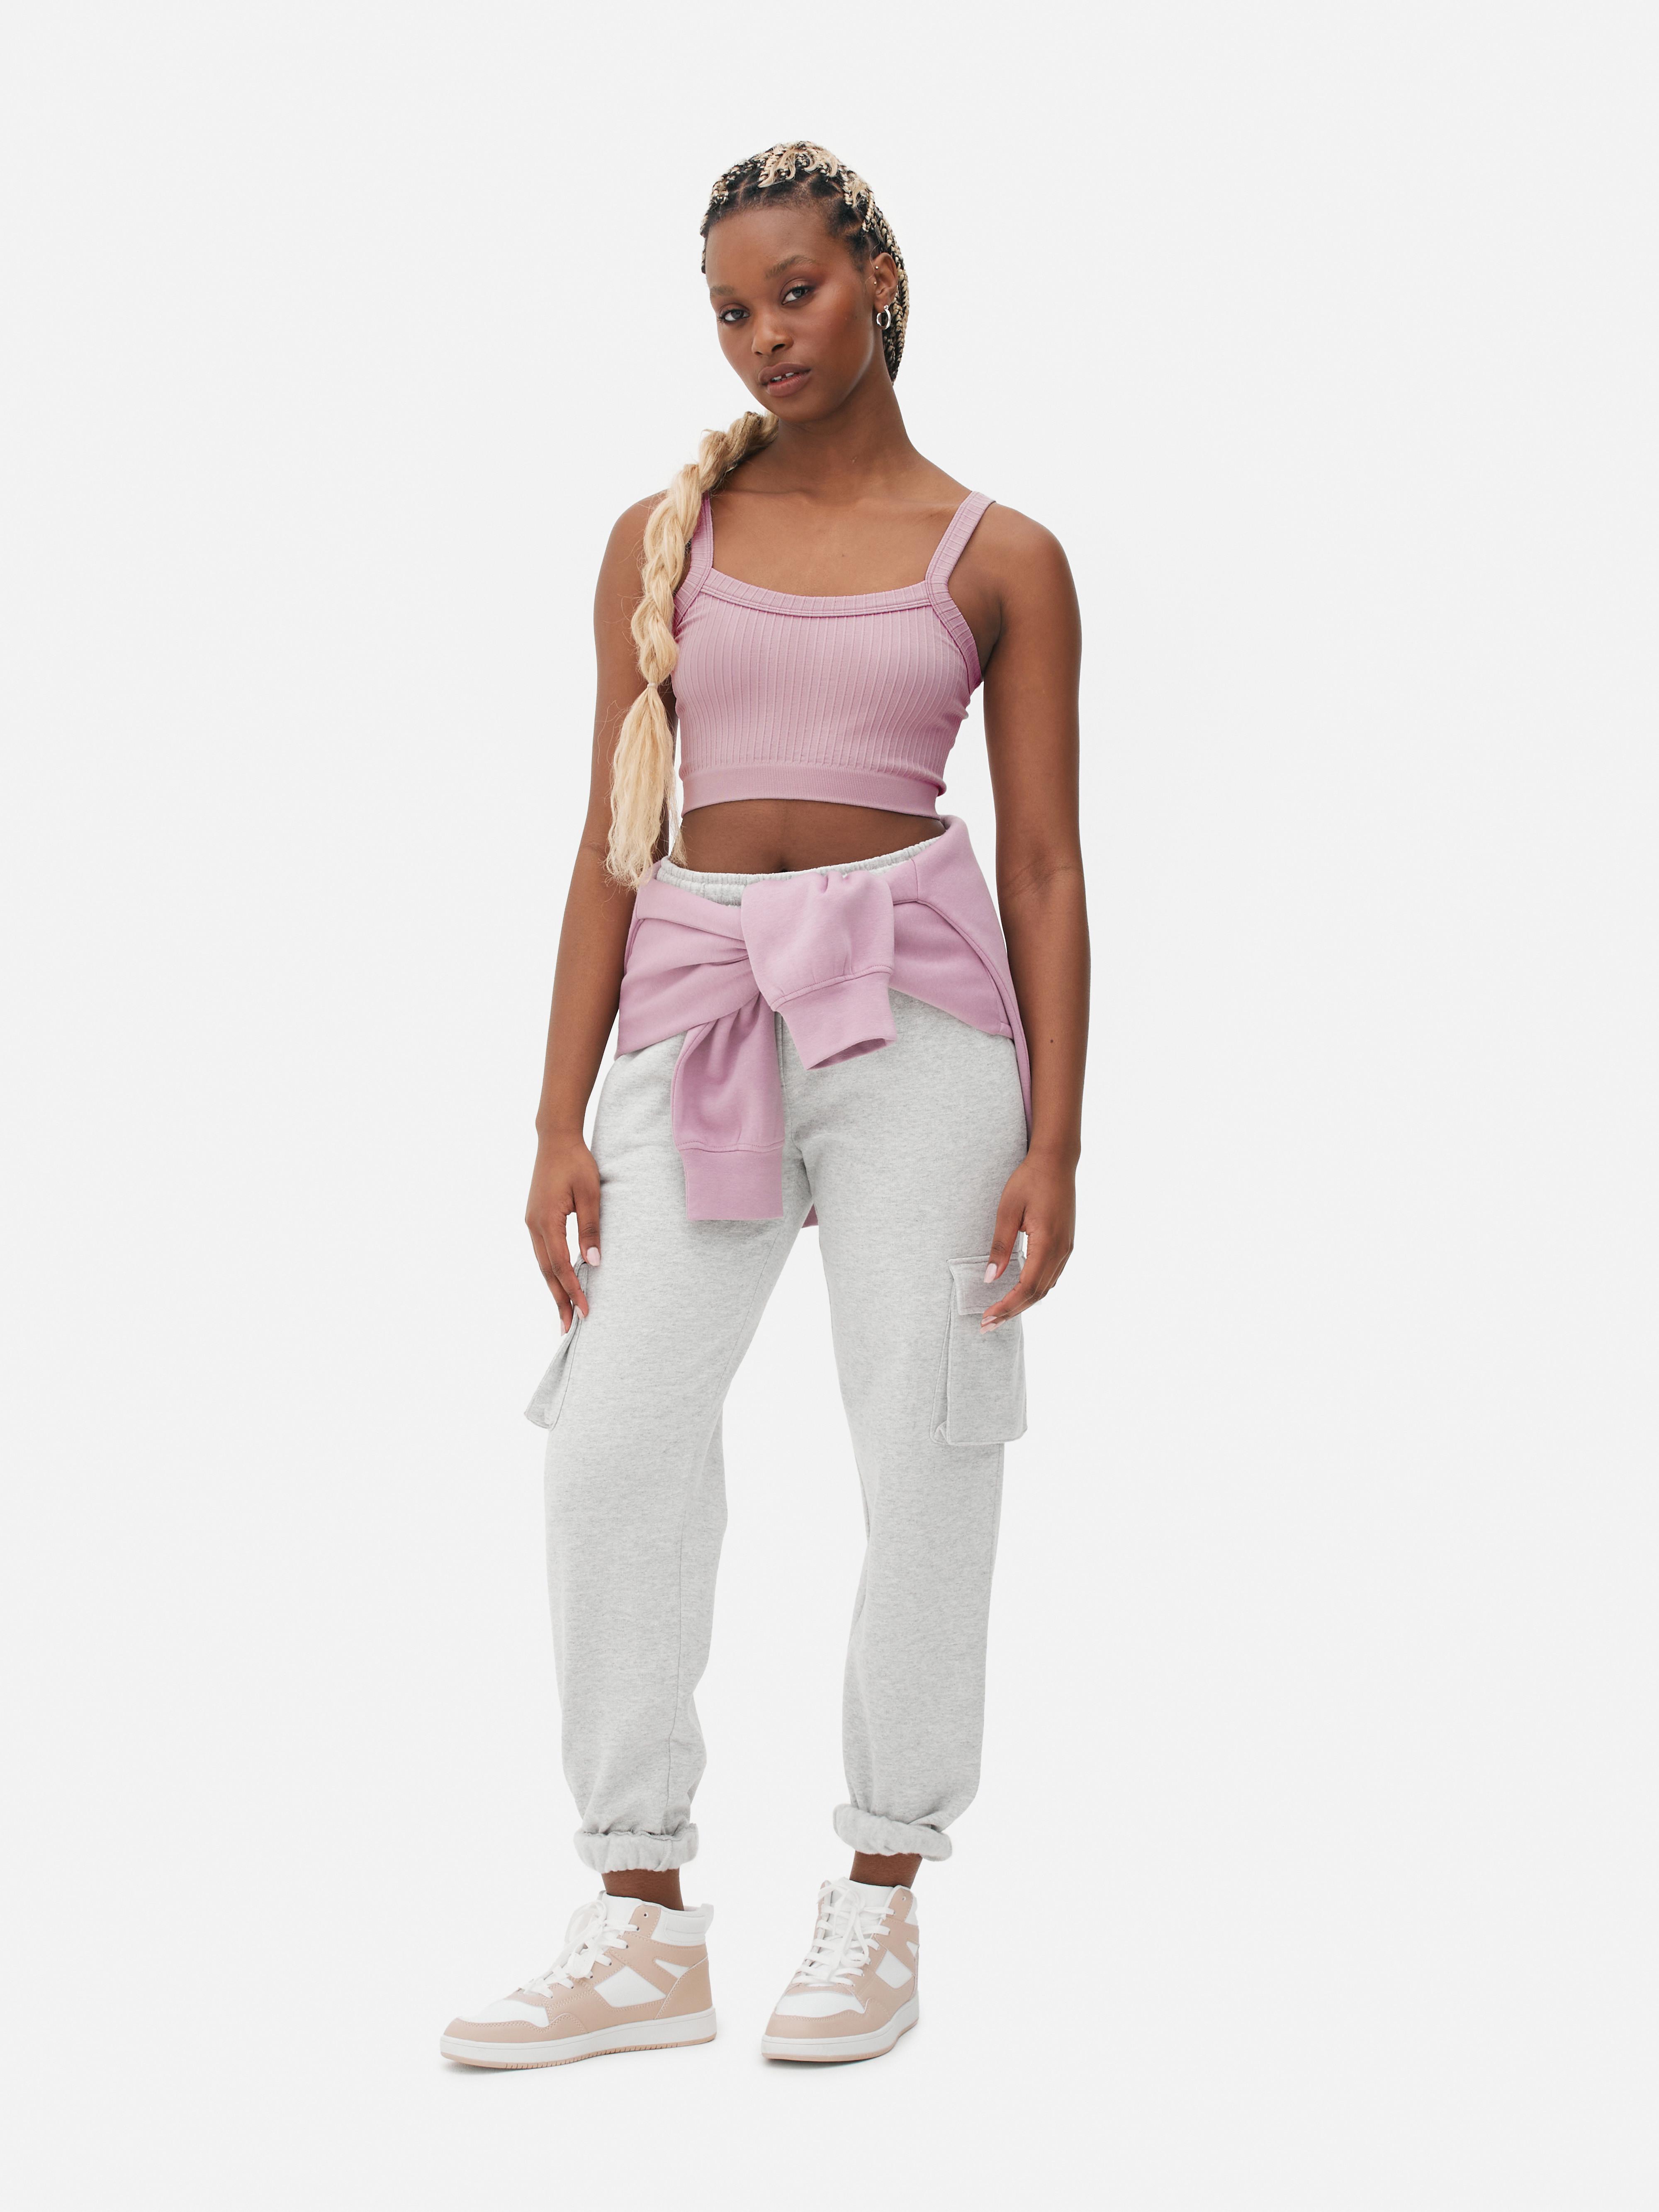 Primark, Intimates & Sleepwear, Primark Workout Line Grey Pink Sports Bra